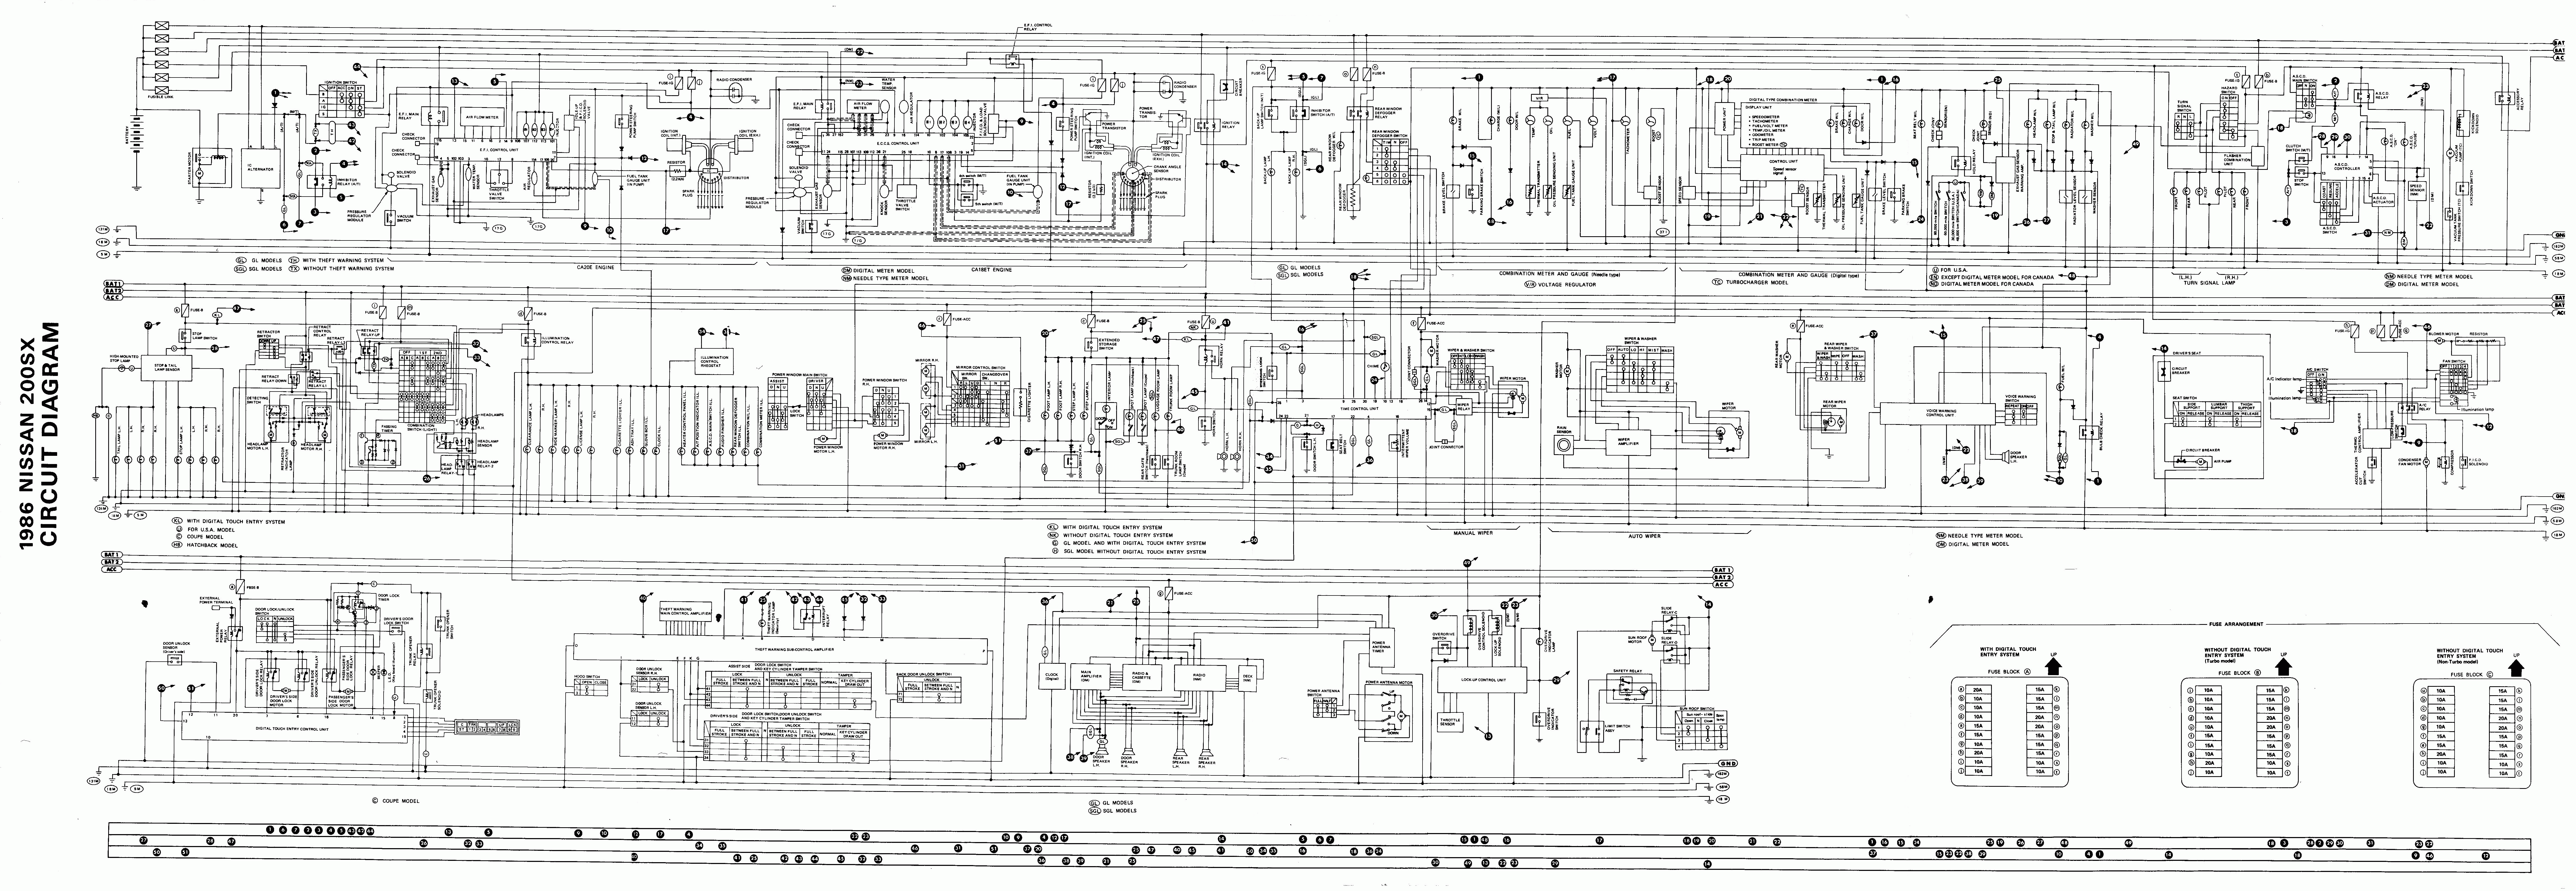 nissan terrano 1992 г. схема электро проводки